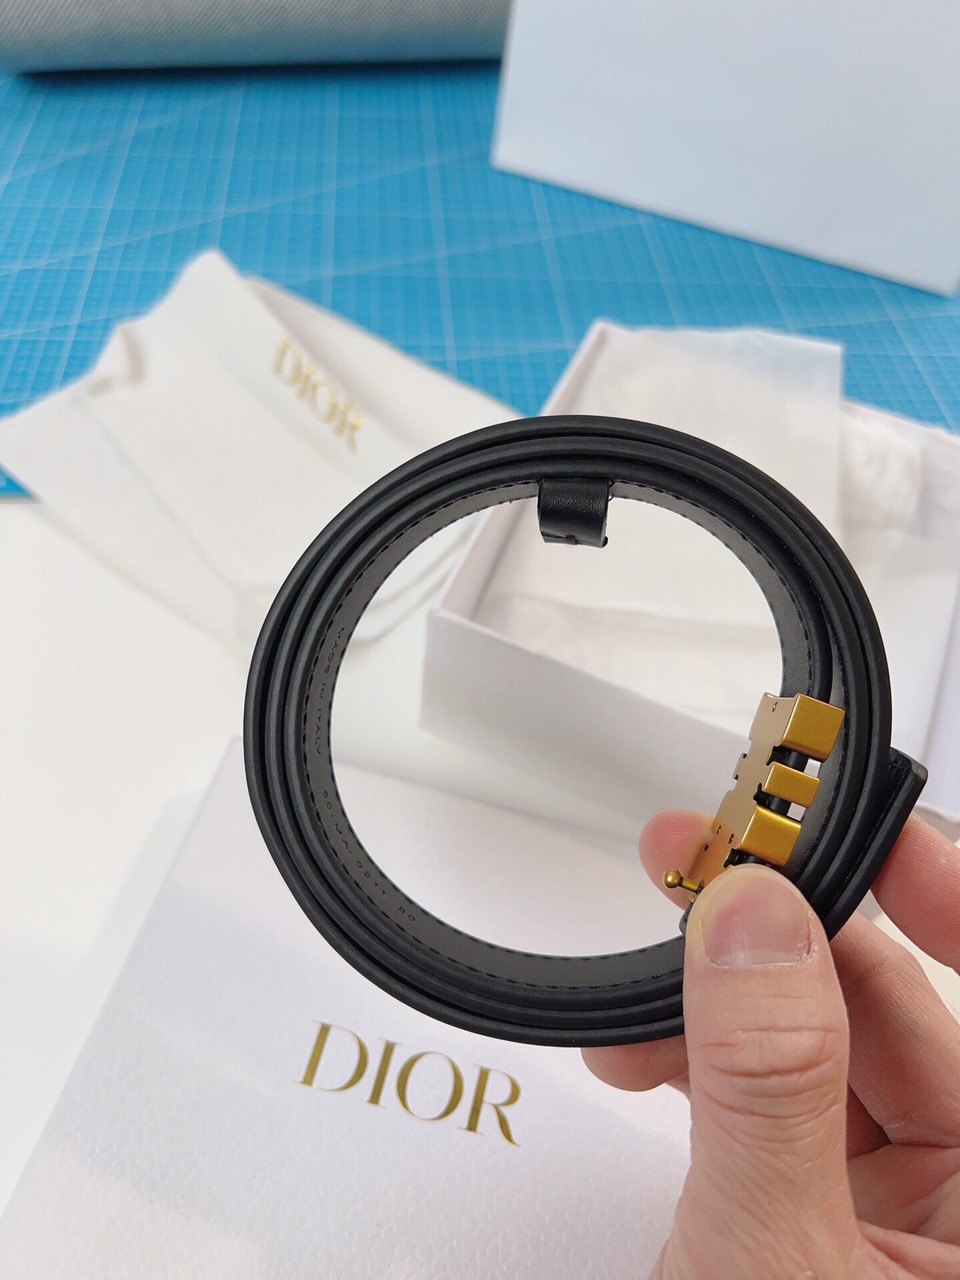 Thắt Lưng Dior logo Dior Siêu Cấp Màu Đen